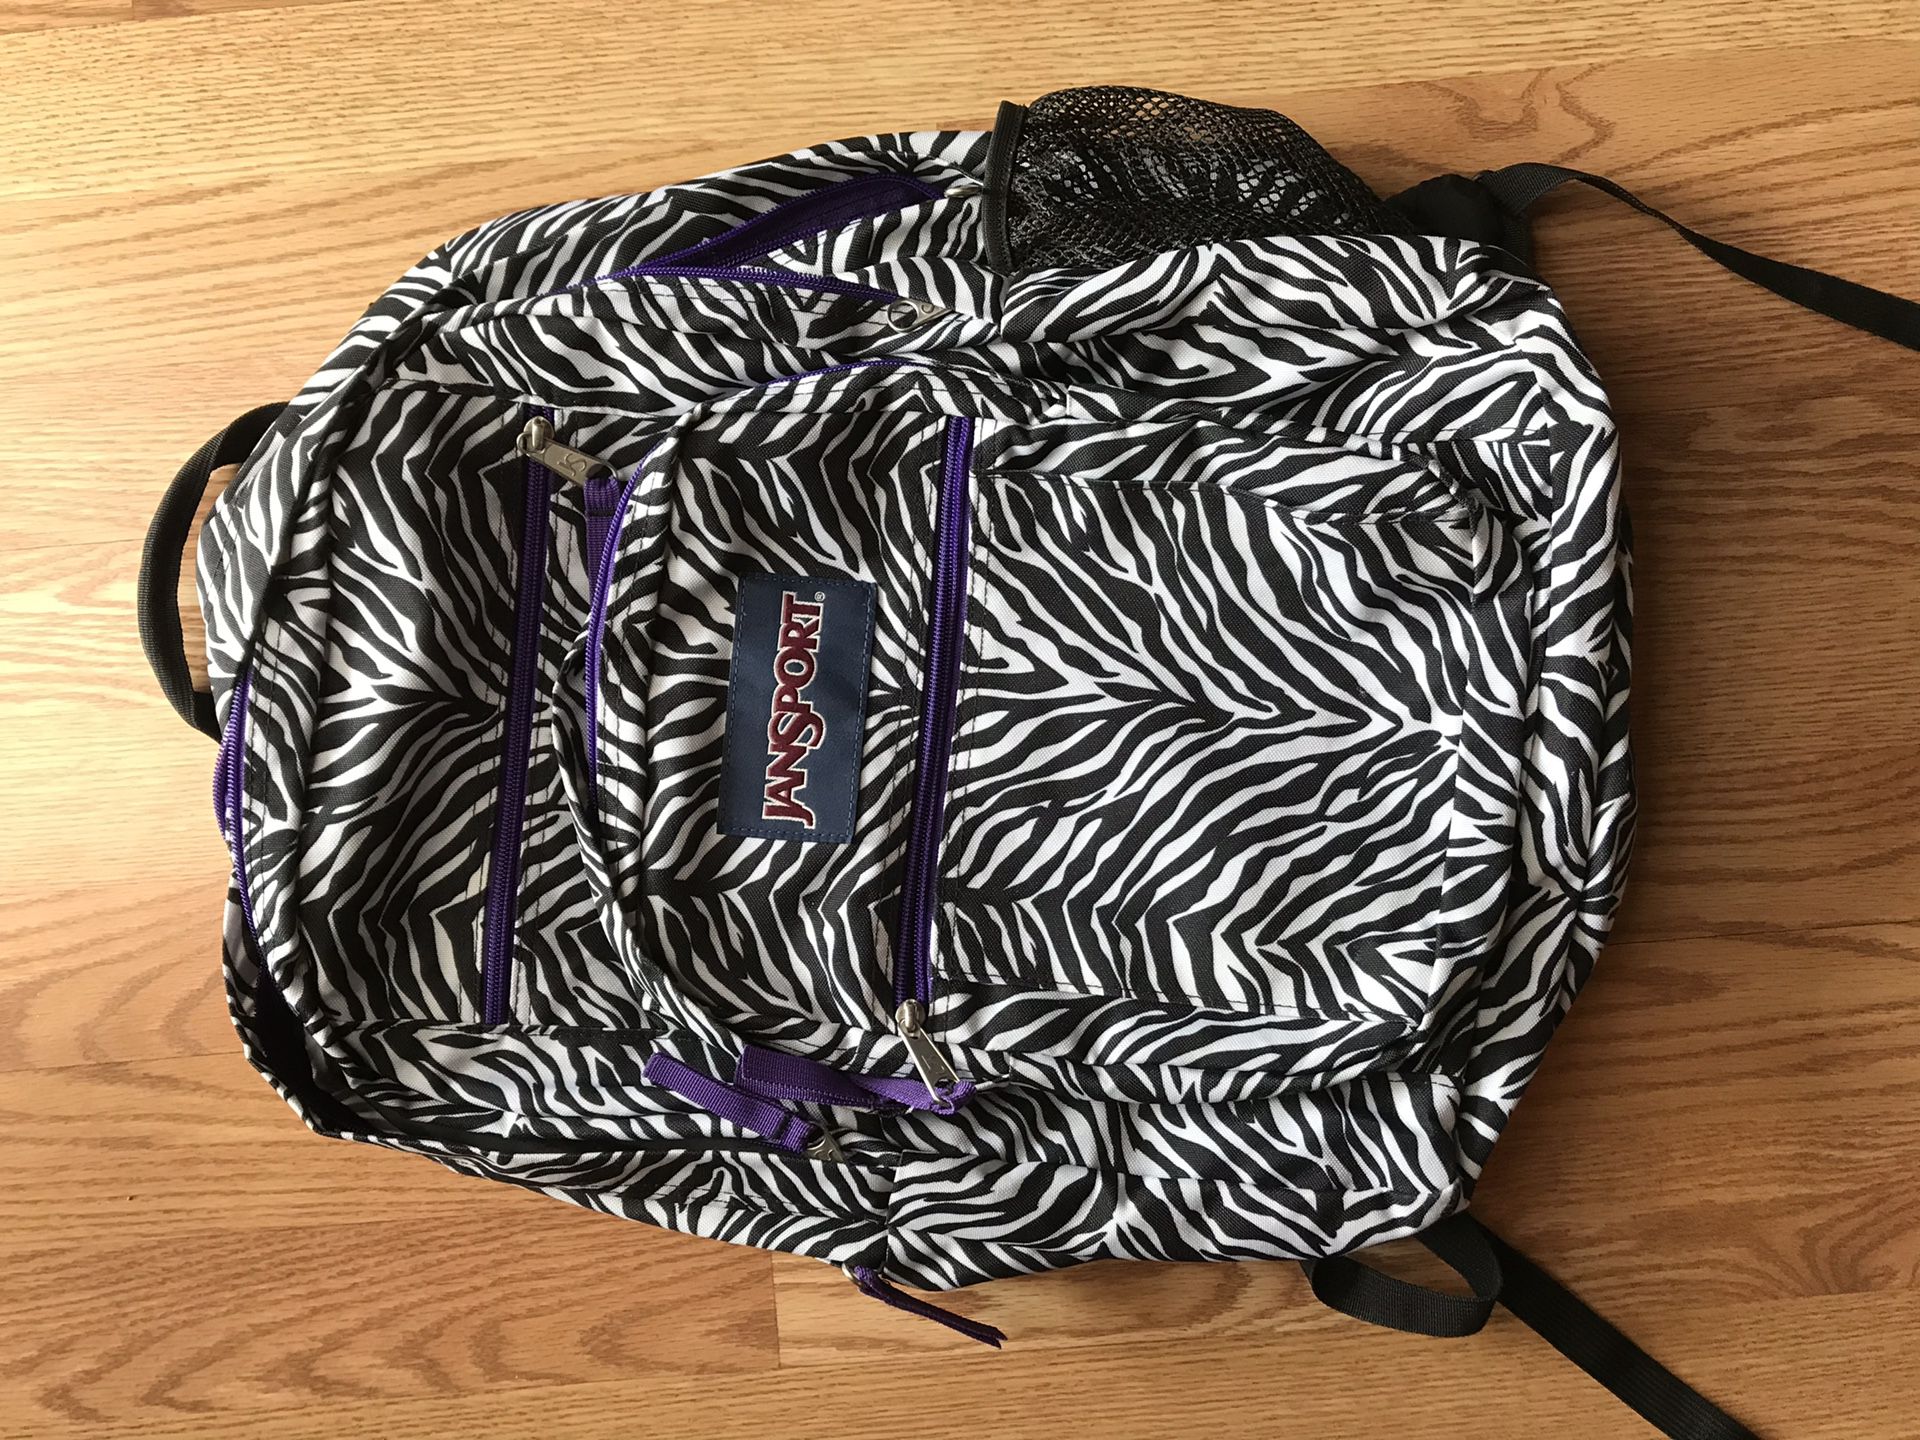 Jansport backpack